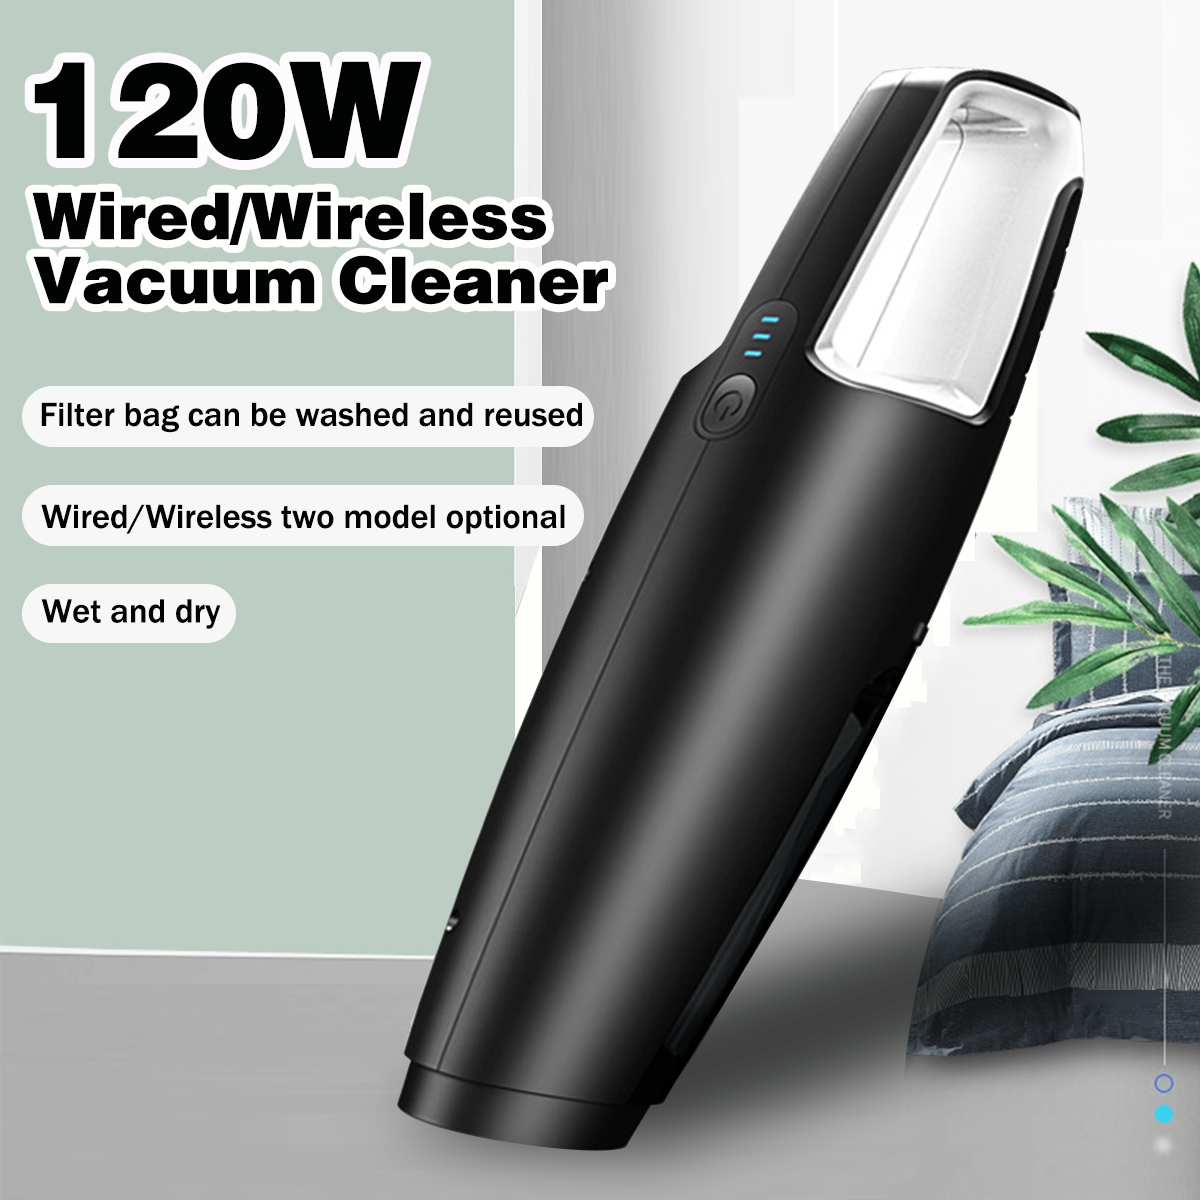 120W-Wireless-Vacuum-Cleaner-Handheld-DryWet-Vacuum-Cleaner-HomeCar-Cleaning-Tool-1421459-1